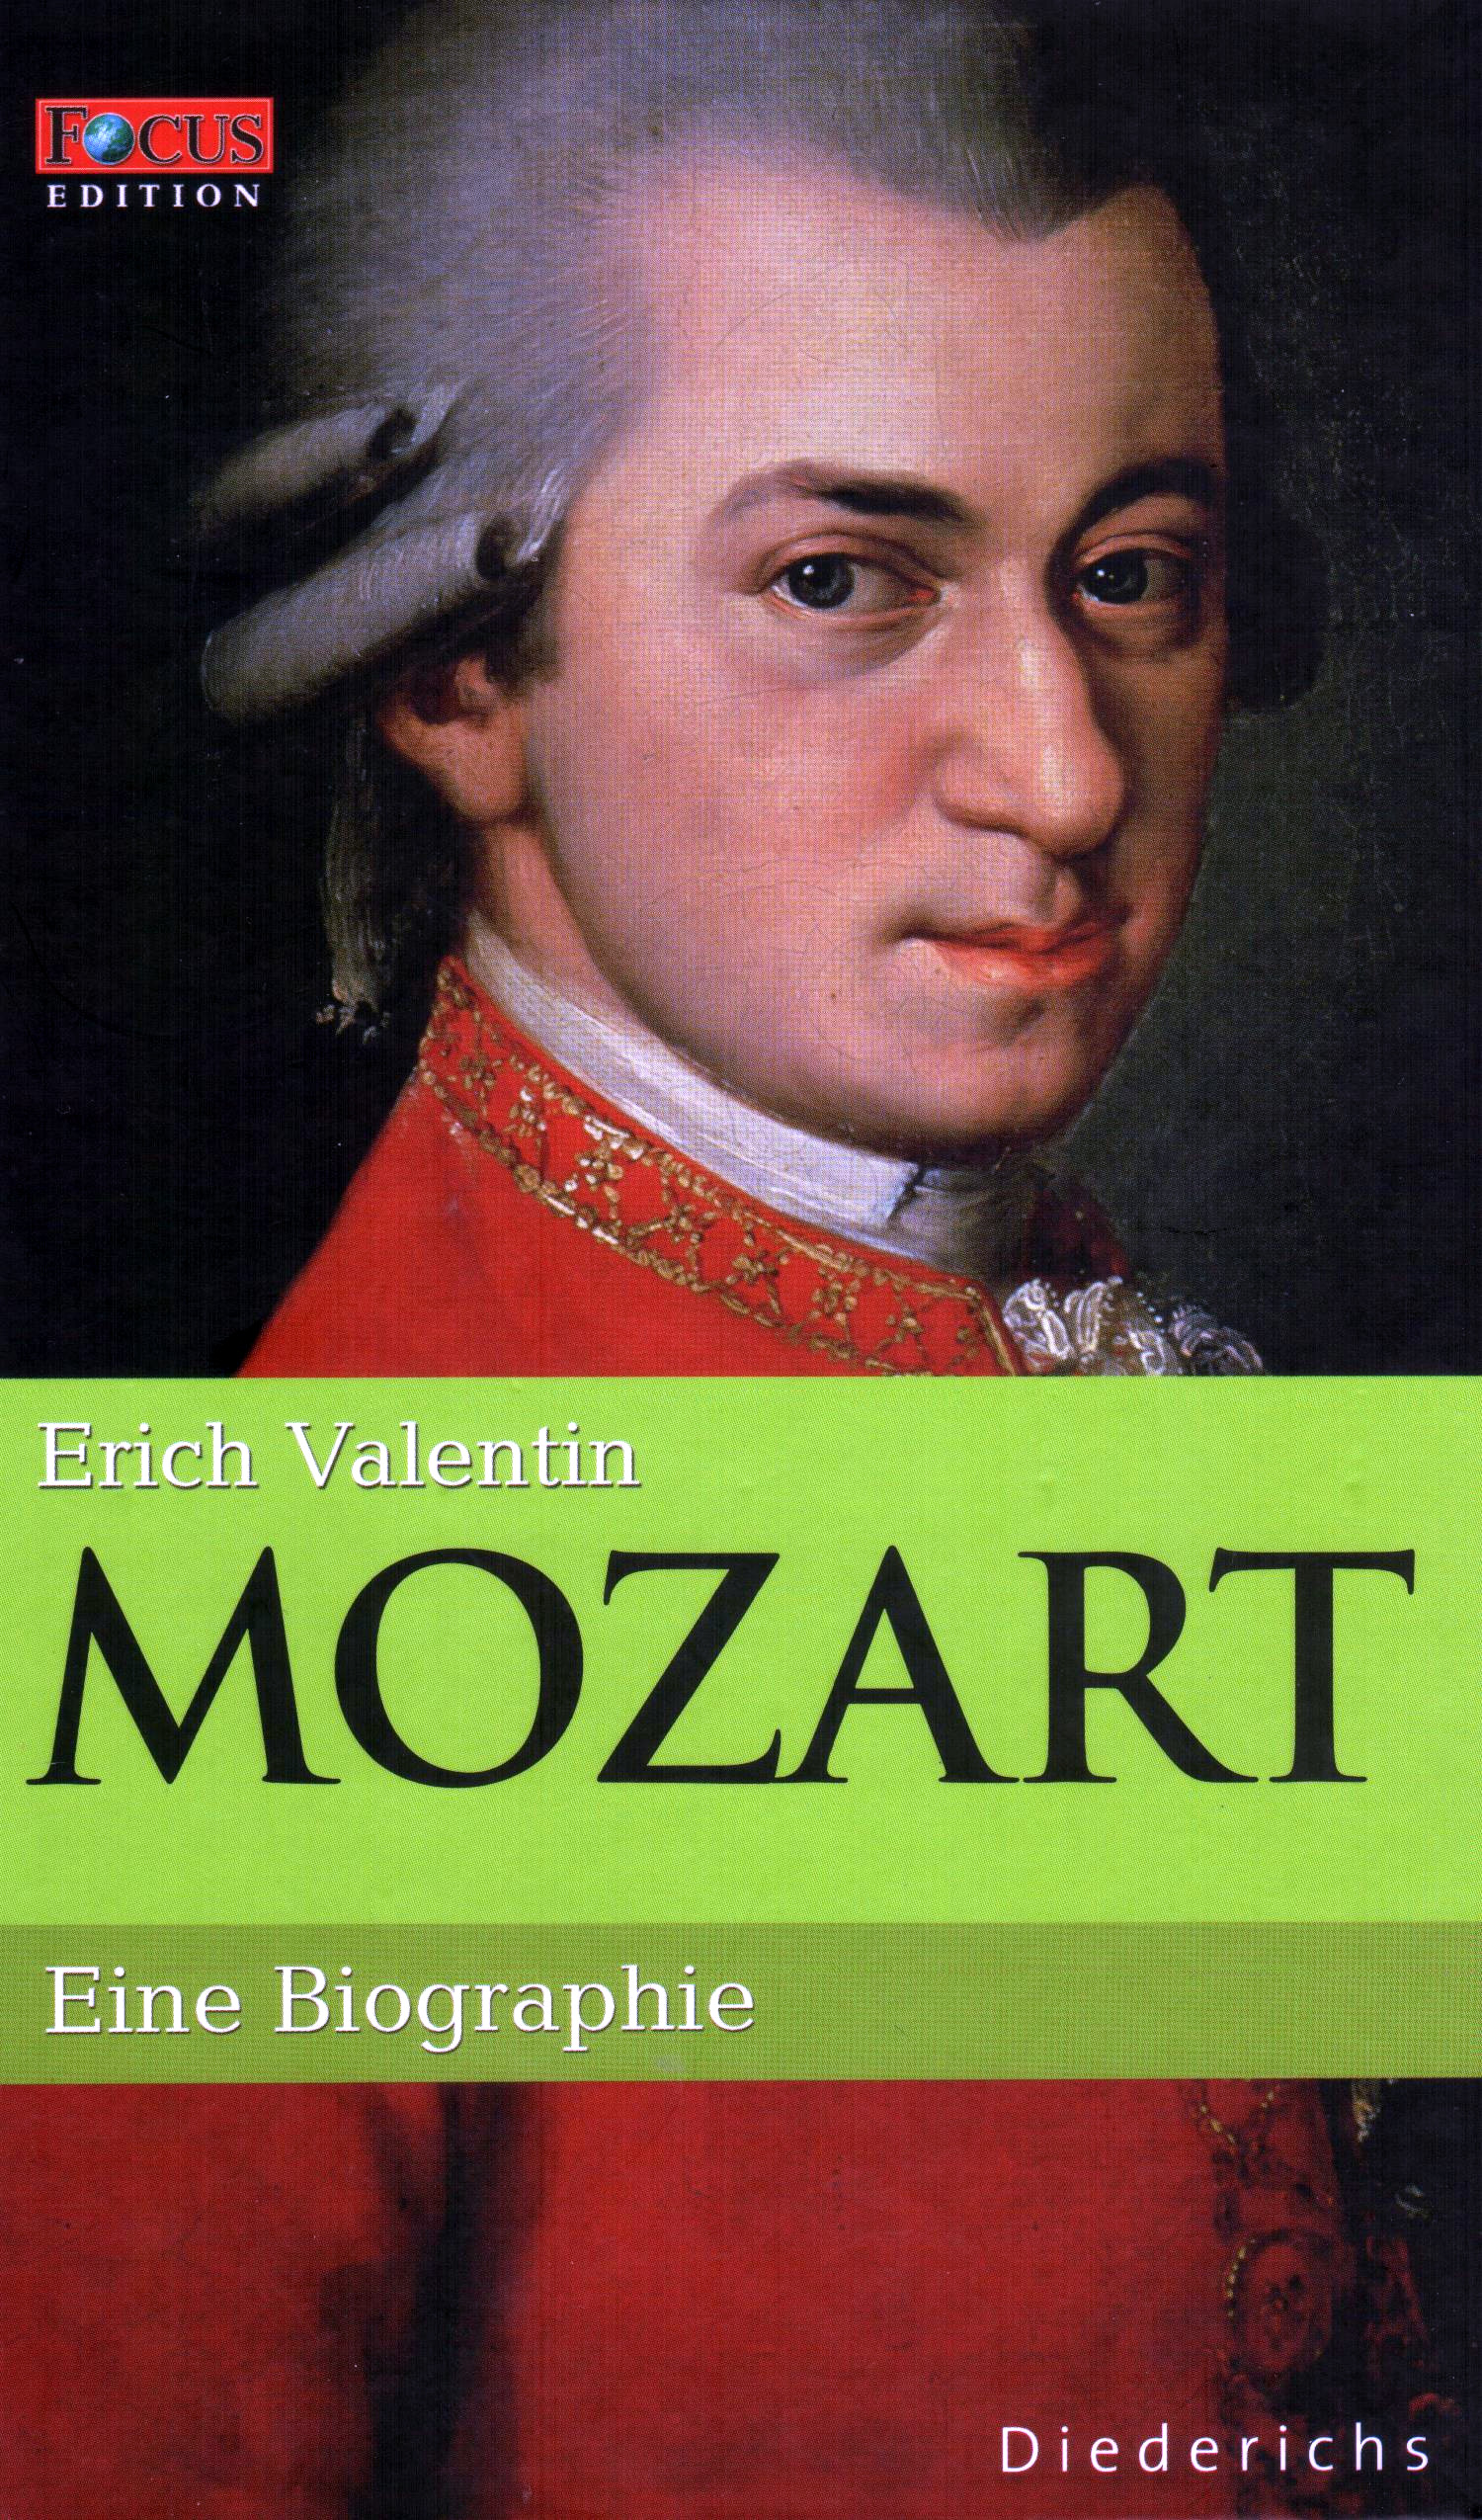 FOCUS Edition (Band 2) Mozart – Eine Biographie